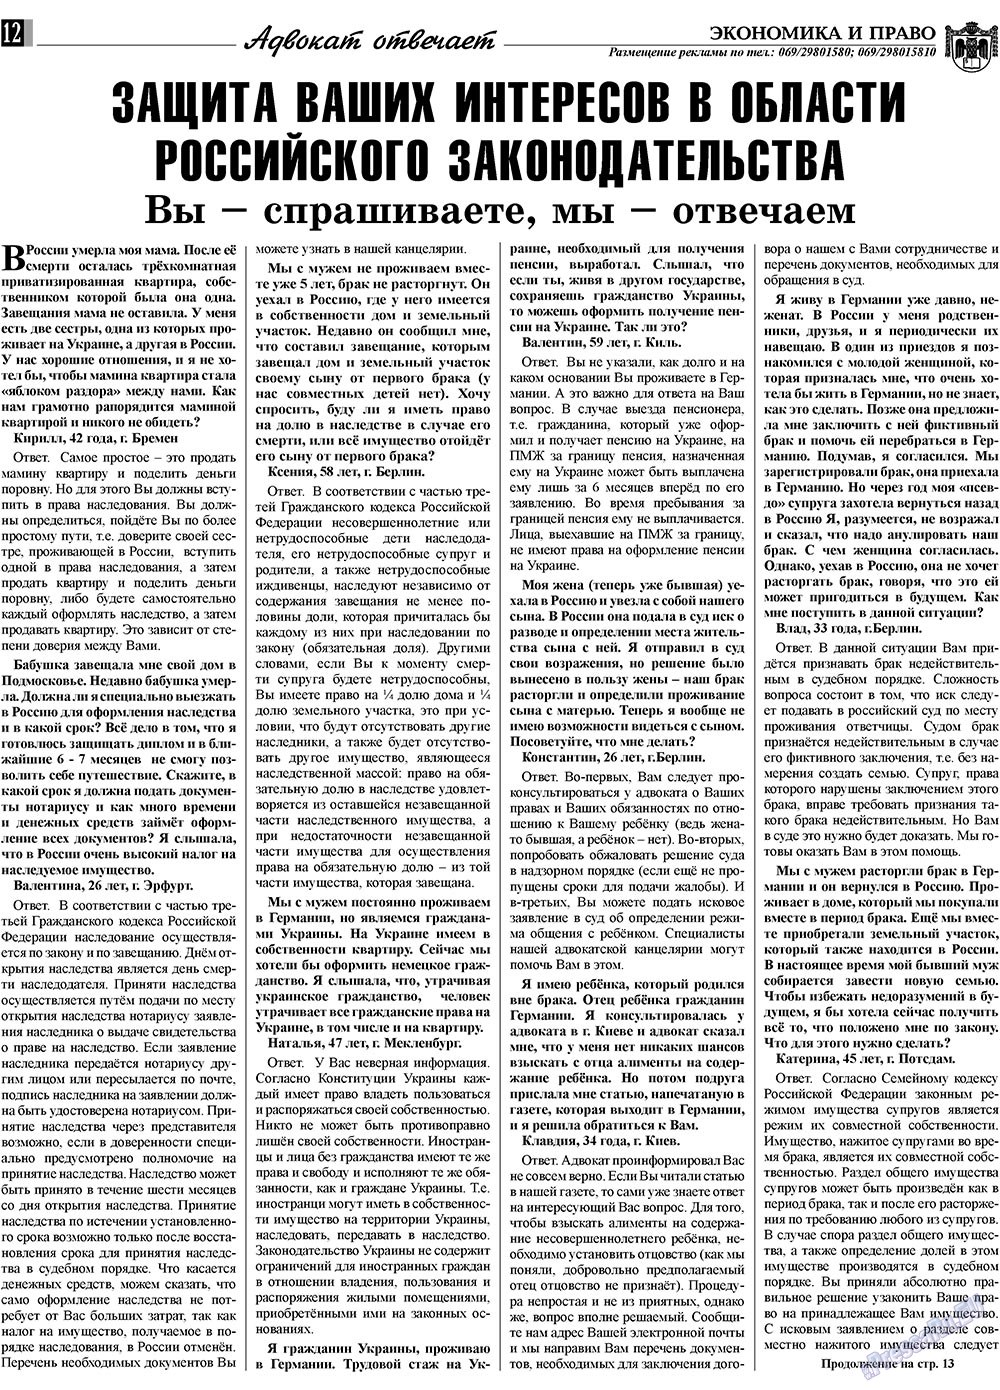 Экономика и право, газета. 2009 №4 стр.12